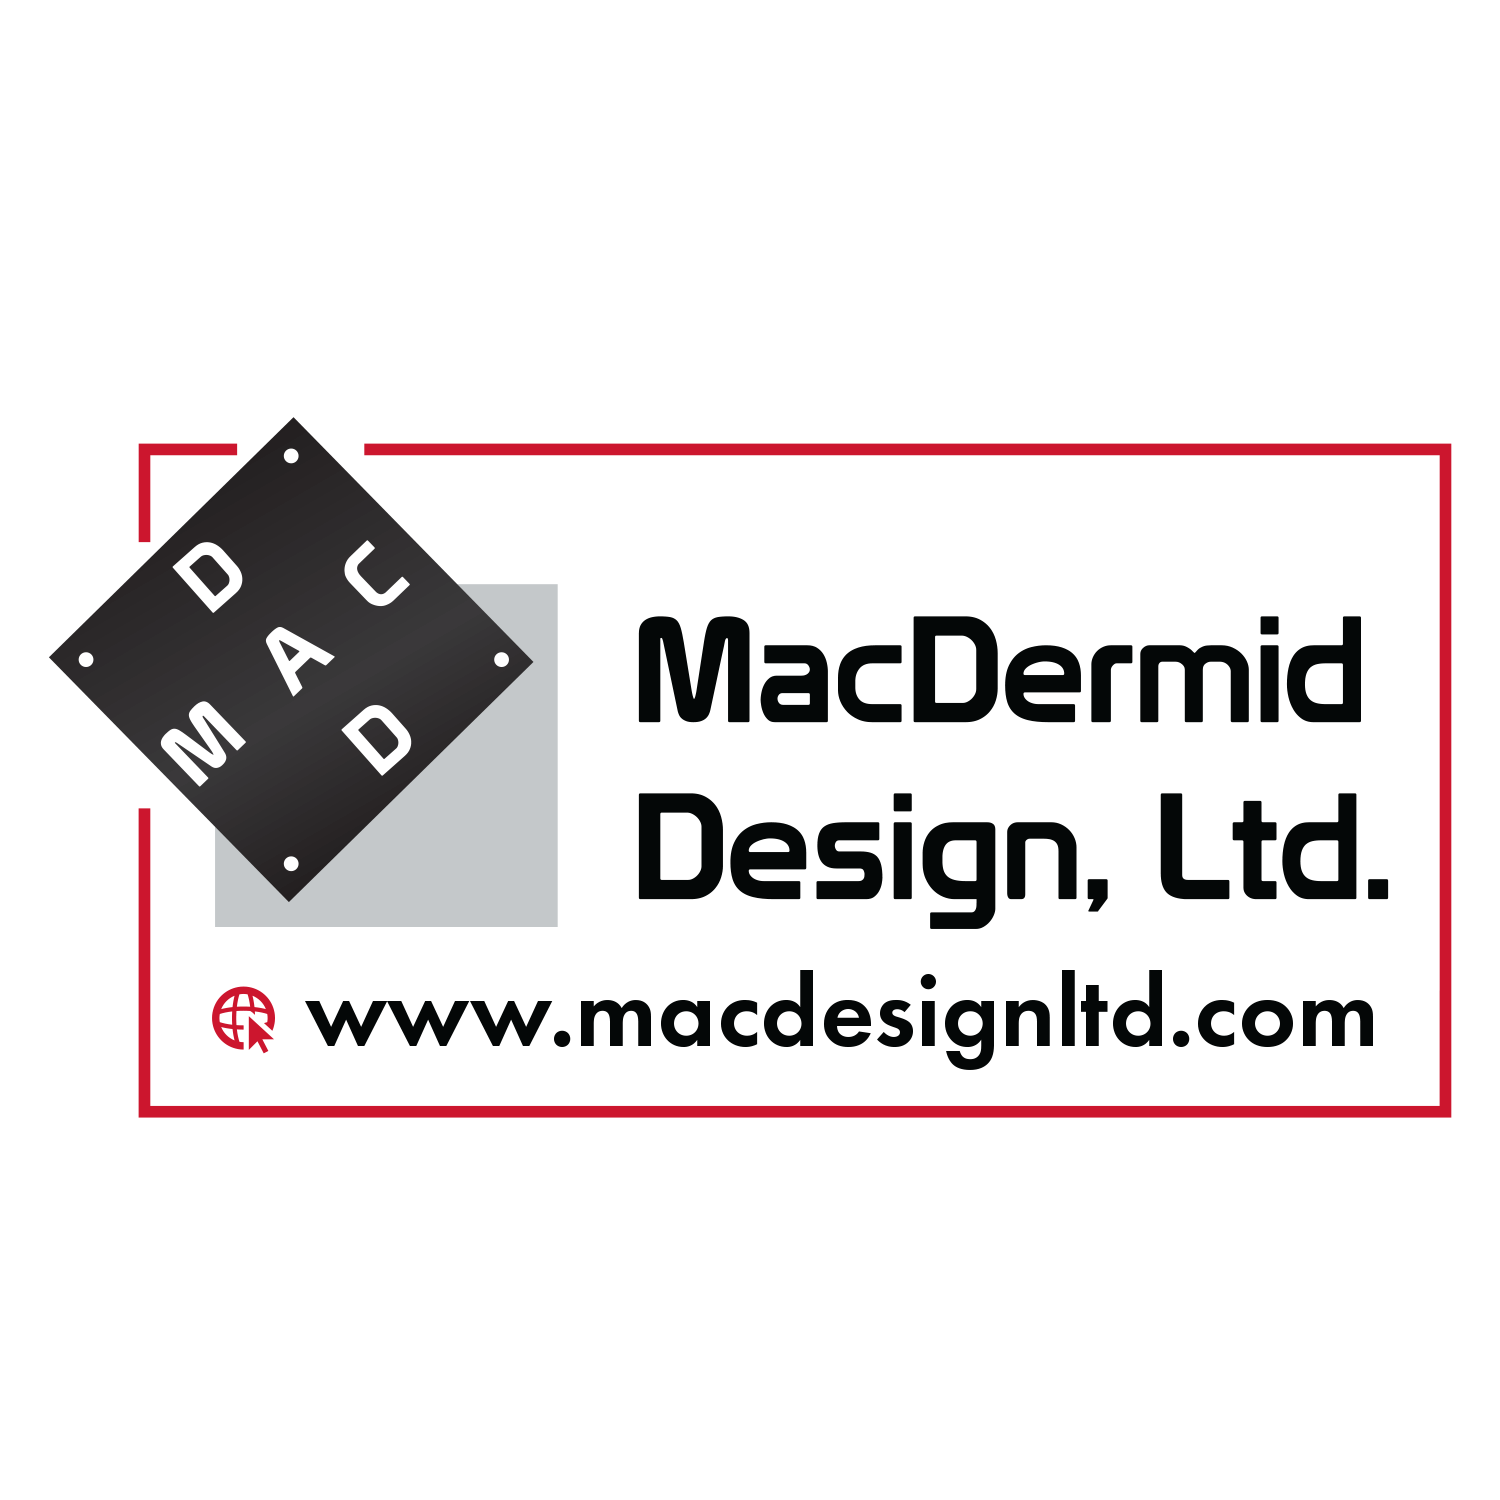 MacDermid Design